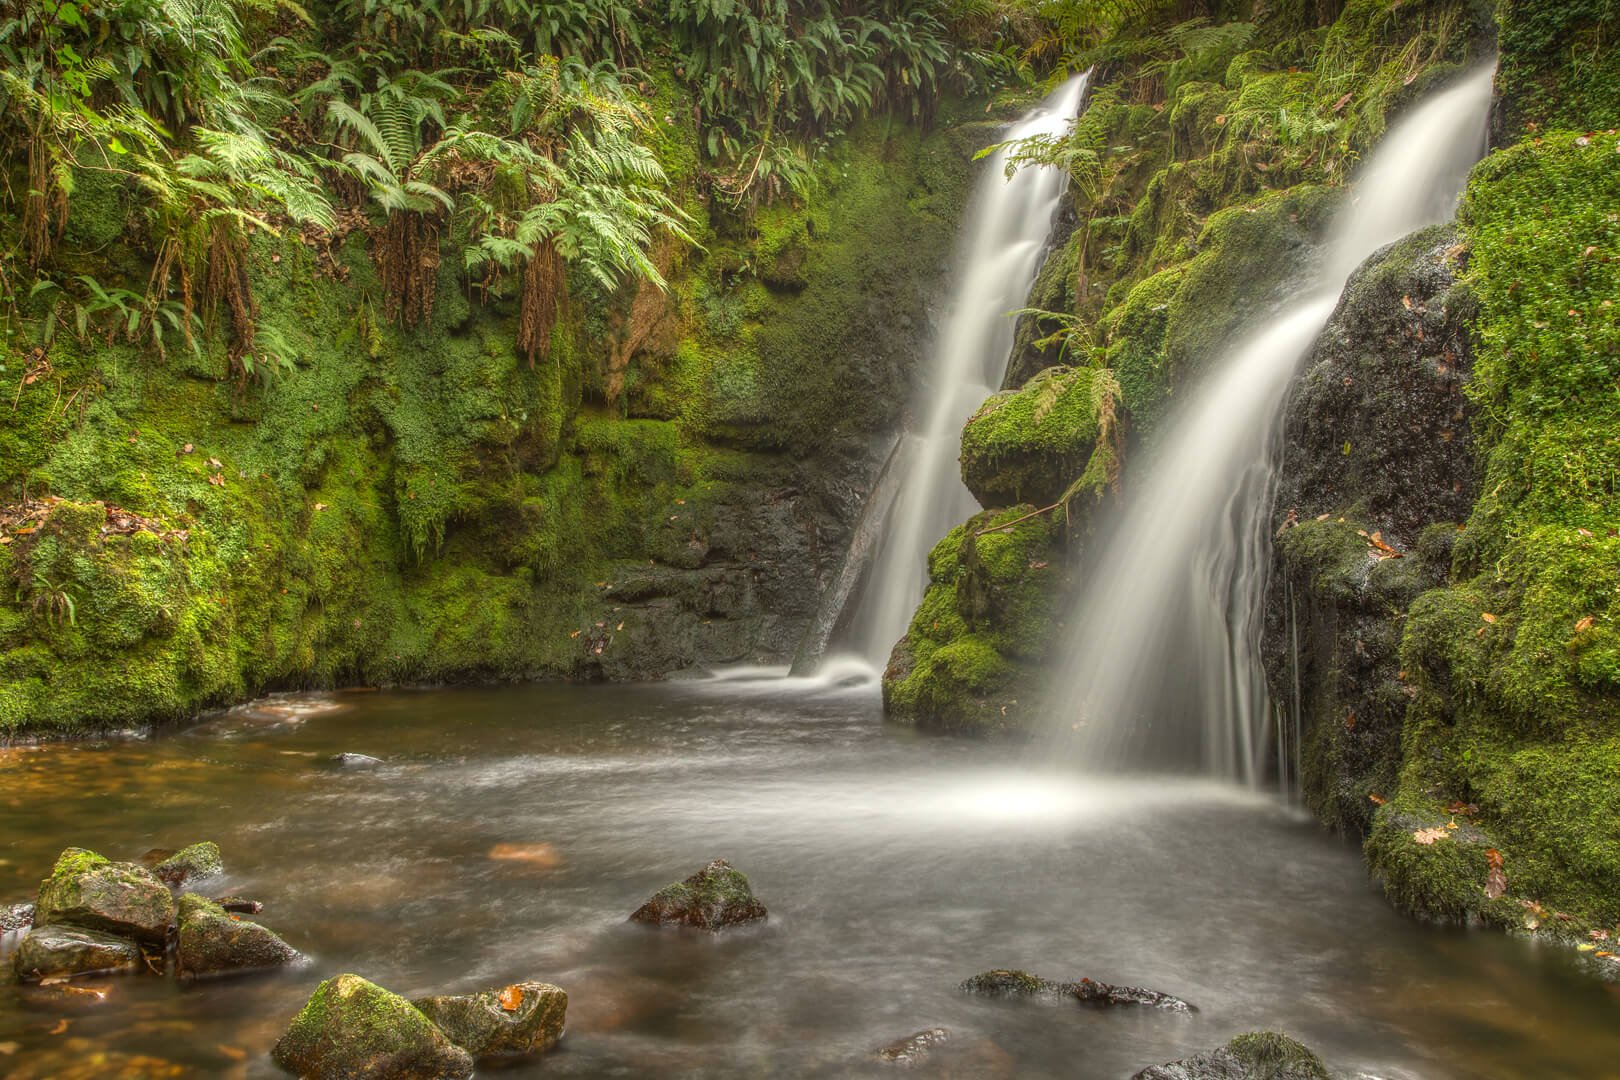 Venford Falls, Dartmoor on my Dartmoor Tors and Hidden Valleys Photography Tour